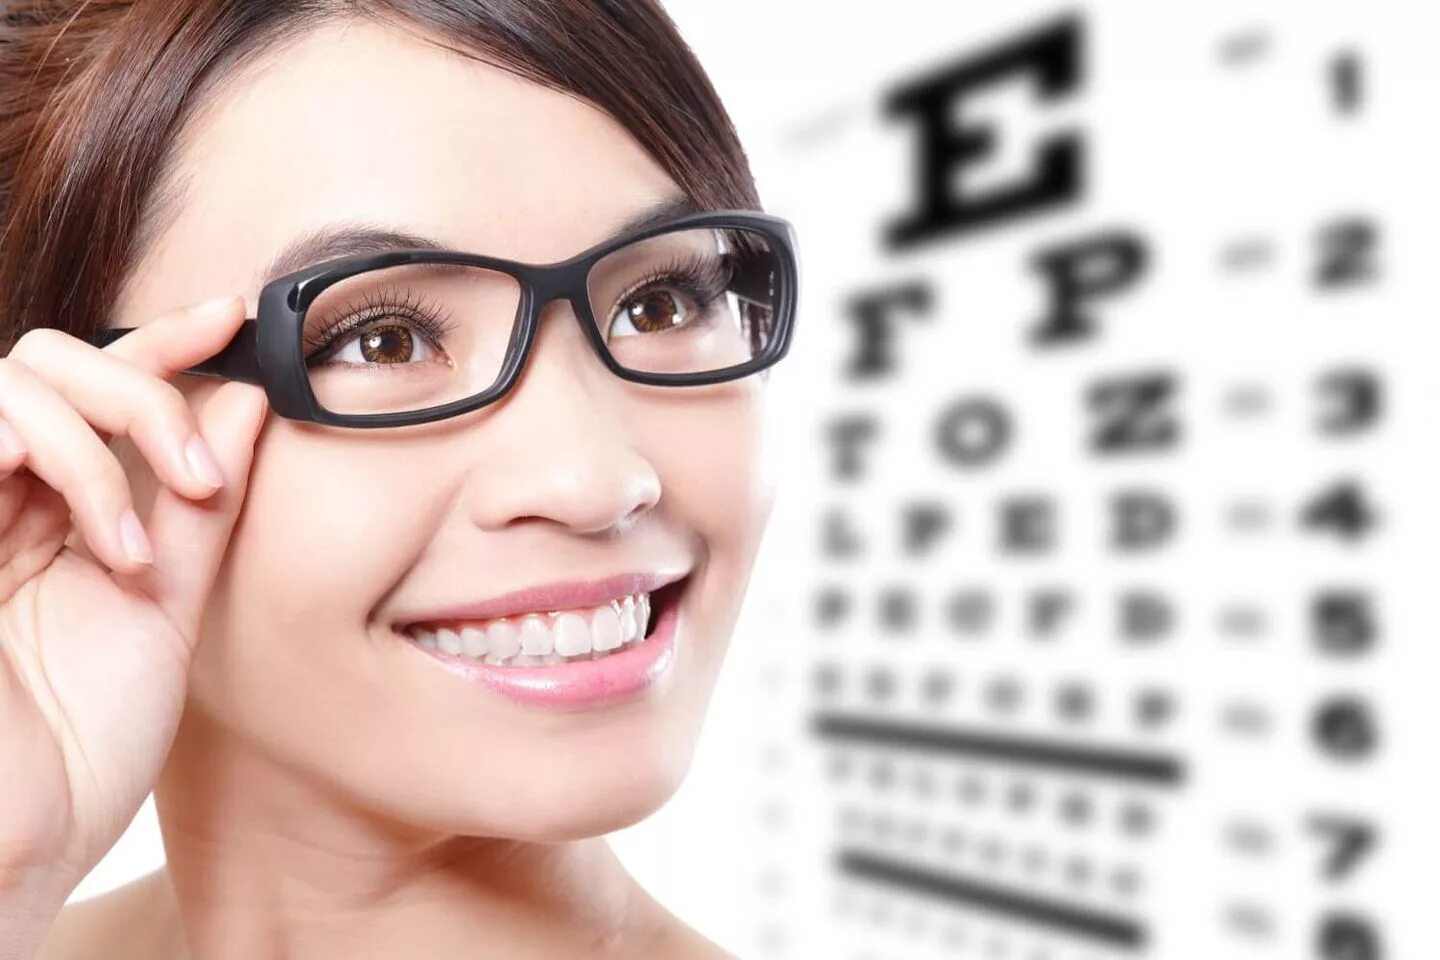 Проблемы со зрением. Оптика в очках. Оптика очки для зрения. Девушки в очках для зрения. Очки для макияжа.